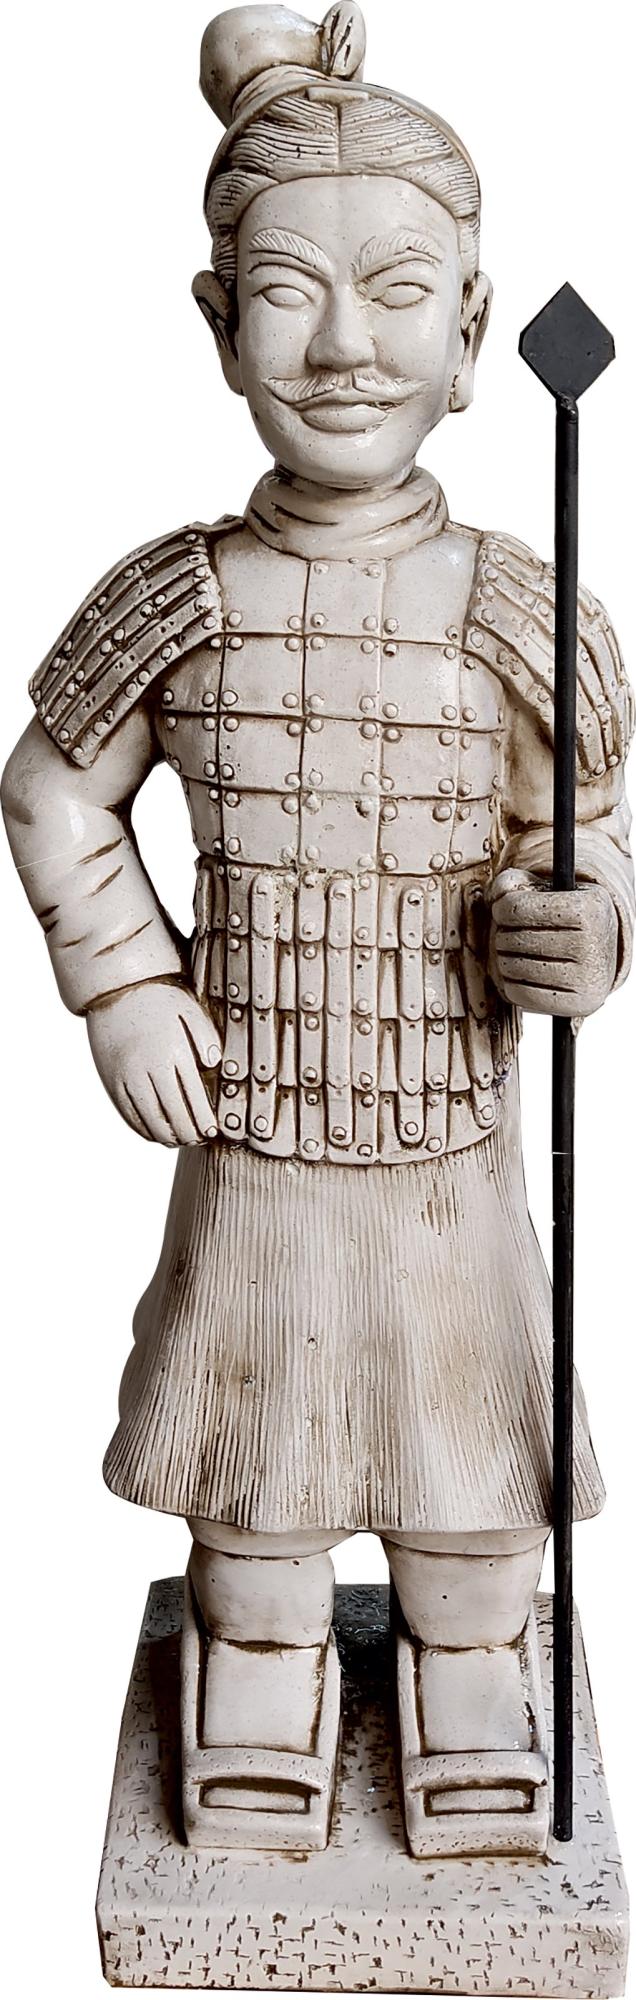 Figura decorativa guerrero chino con lanza de 82 cm ceniza